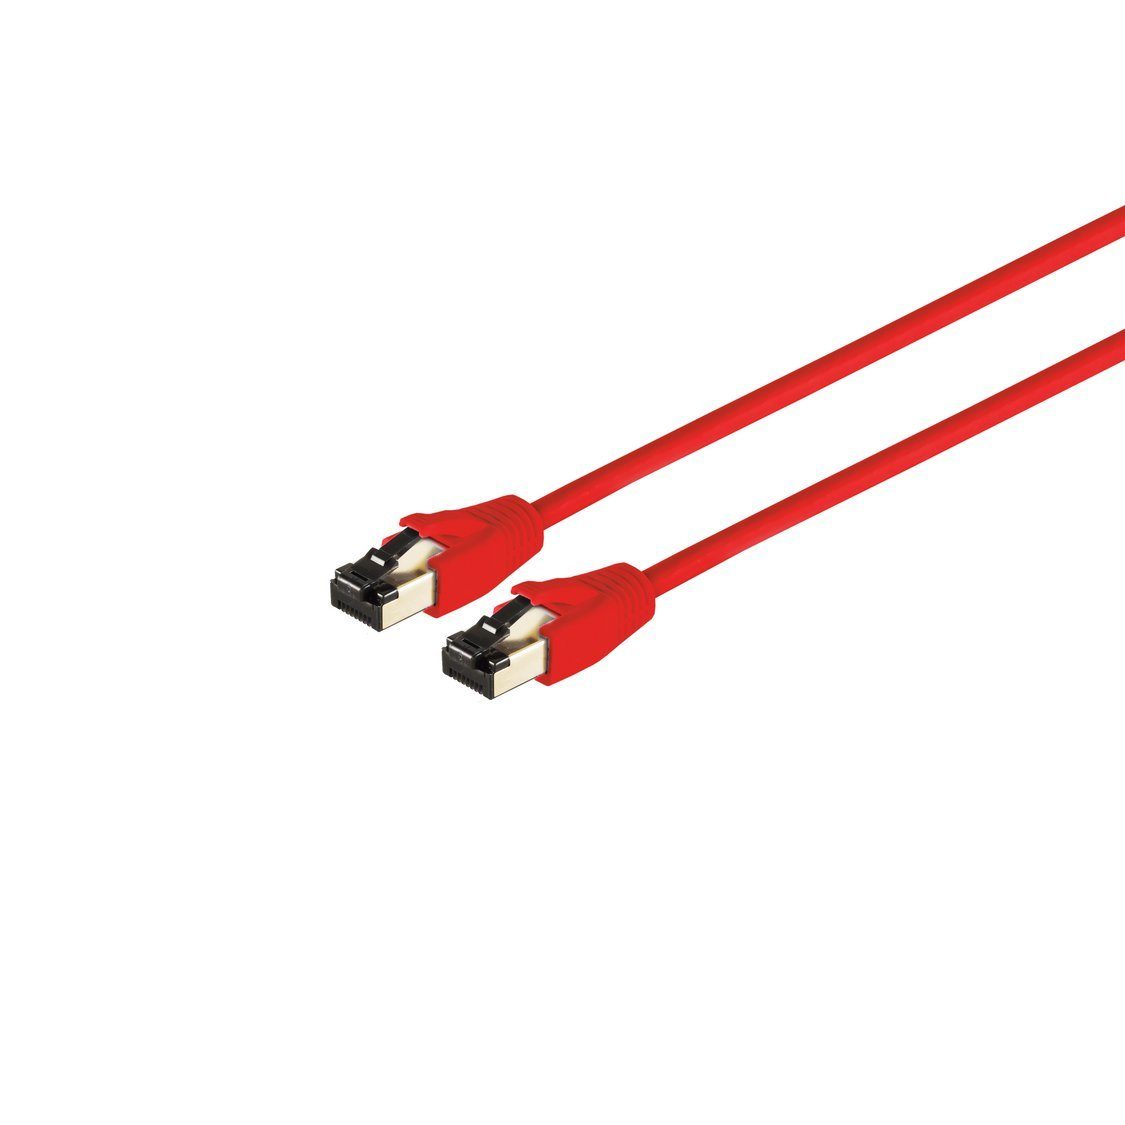 S/CONN maximum connectivity® Patchkabel cat 8.1 F/FTP PIMF LSZH rot 3,0m LAN-Kabel, RJ-45, (300 cm)